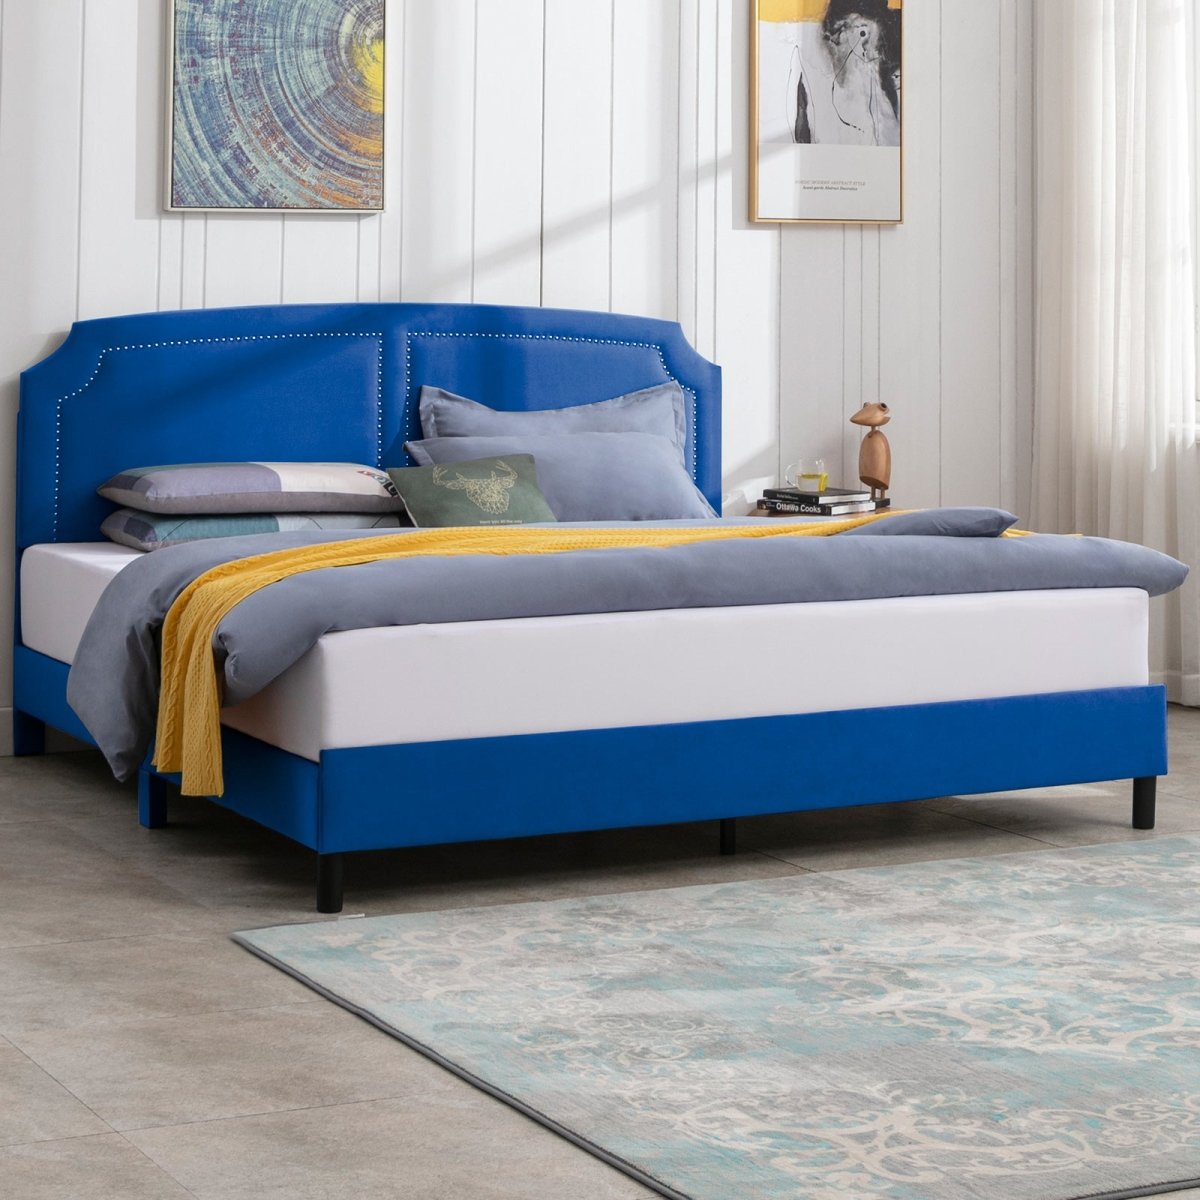 Upholstered Bed Frame | Velvet Platform Bed Frame with Headboard and Wooden Slats No Box Spring Required - Mjkonebed frame